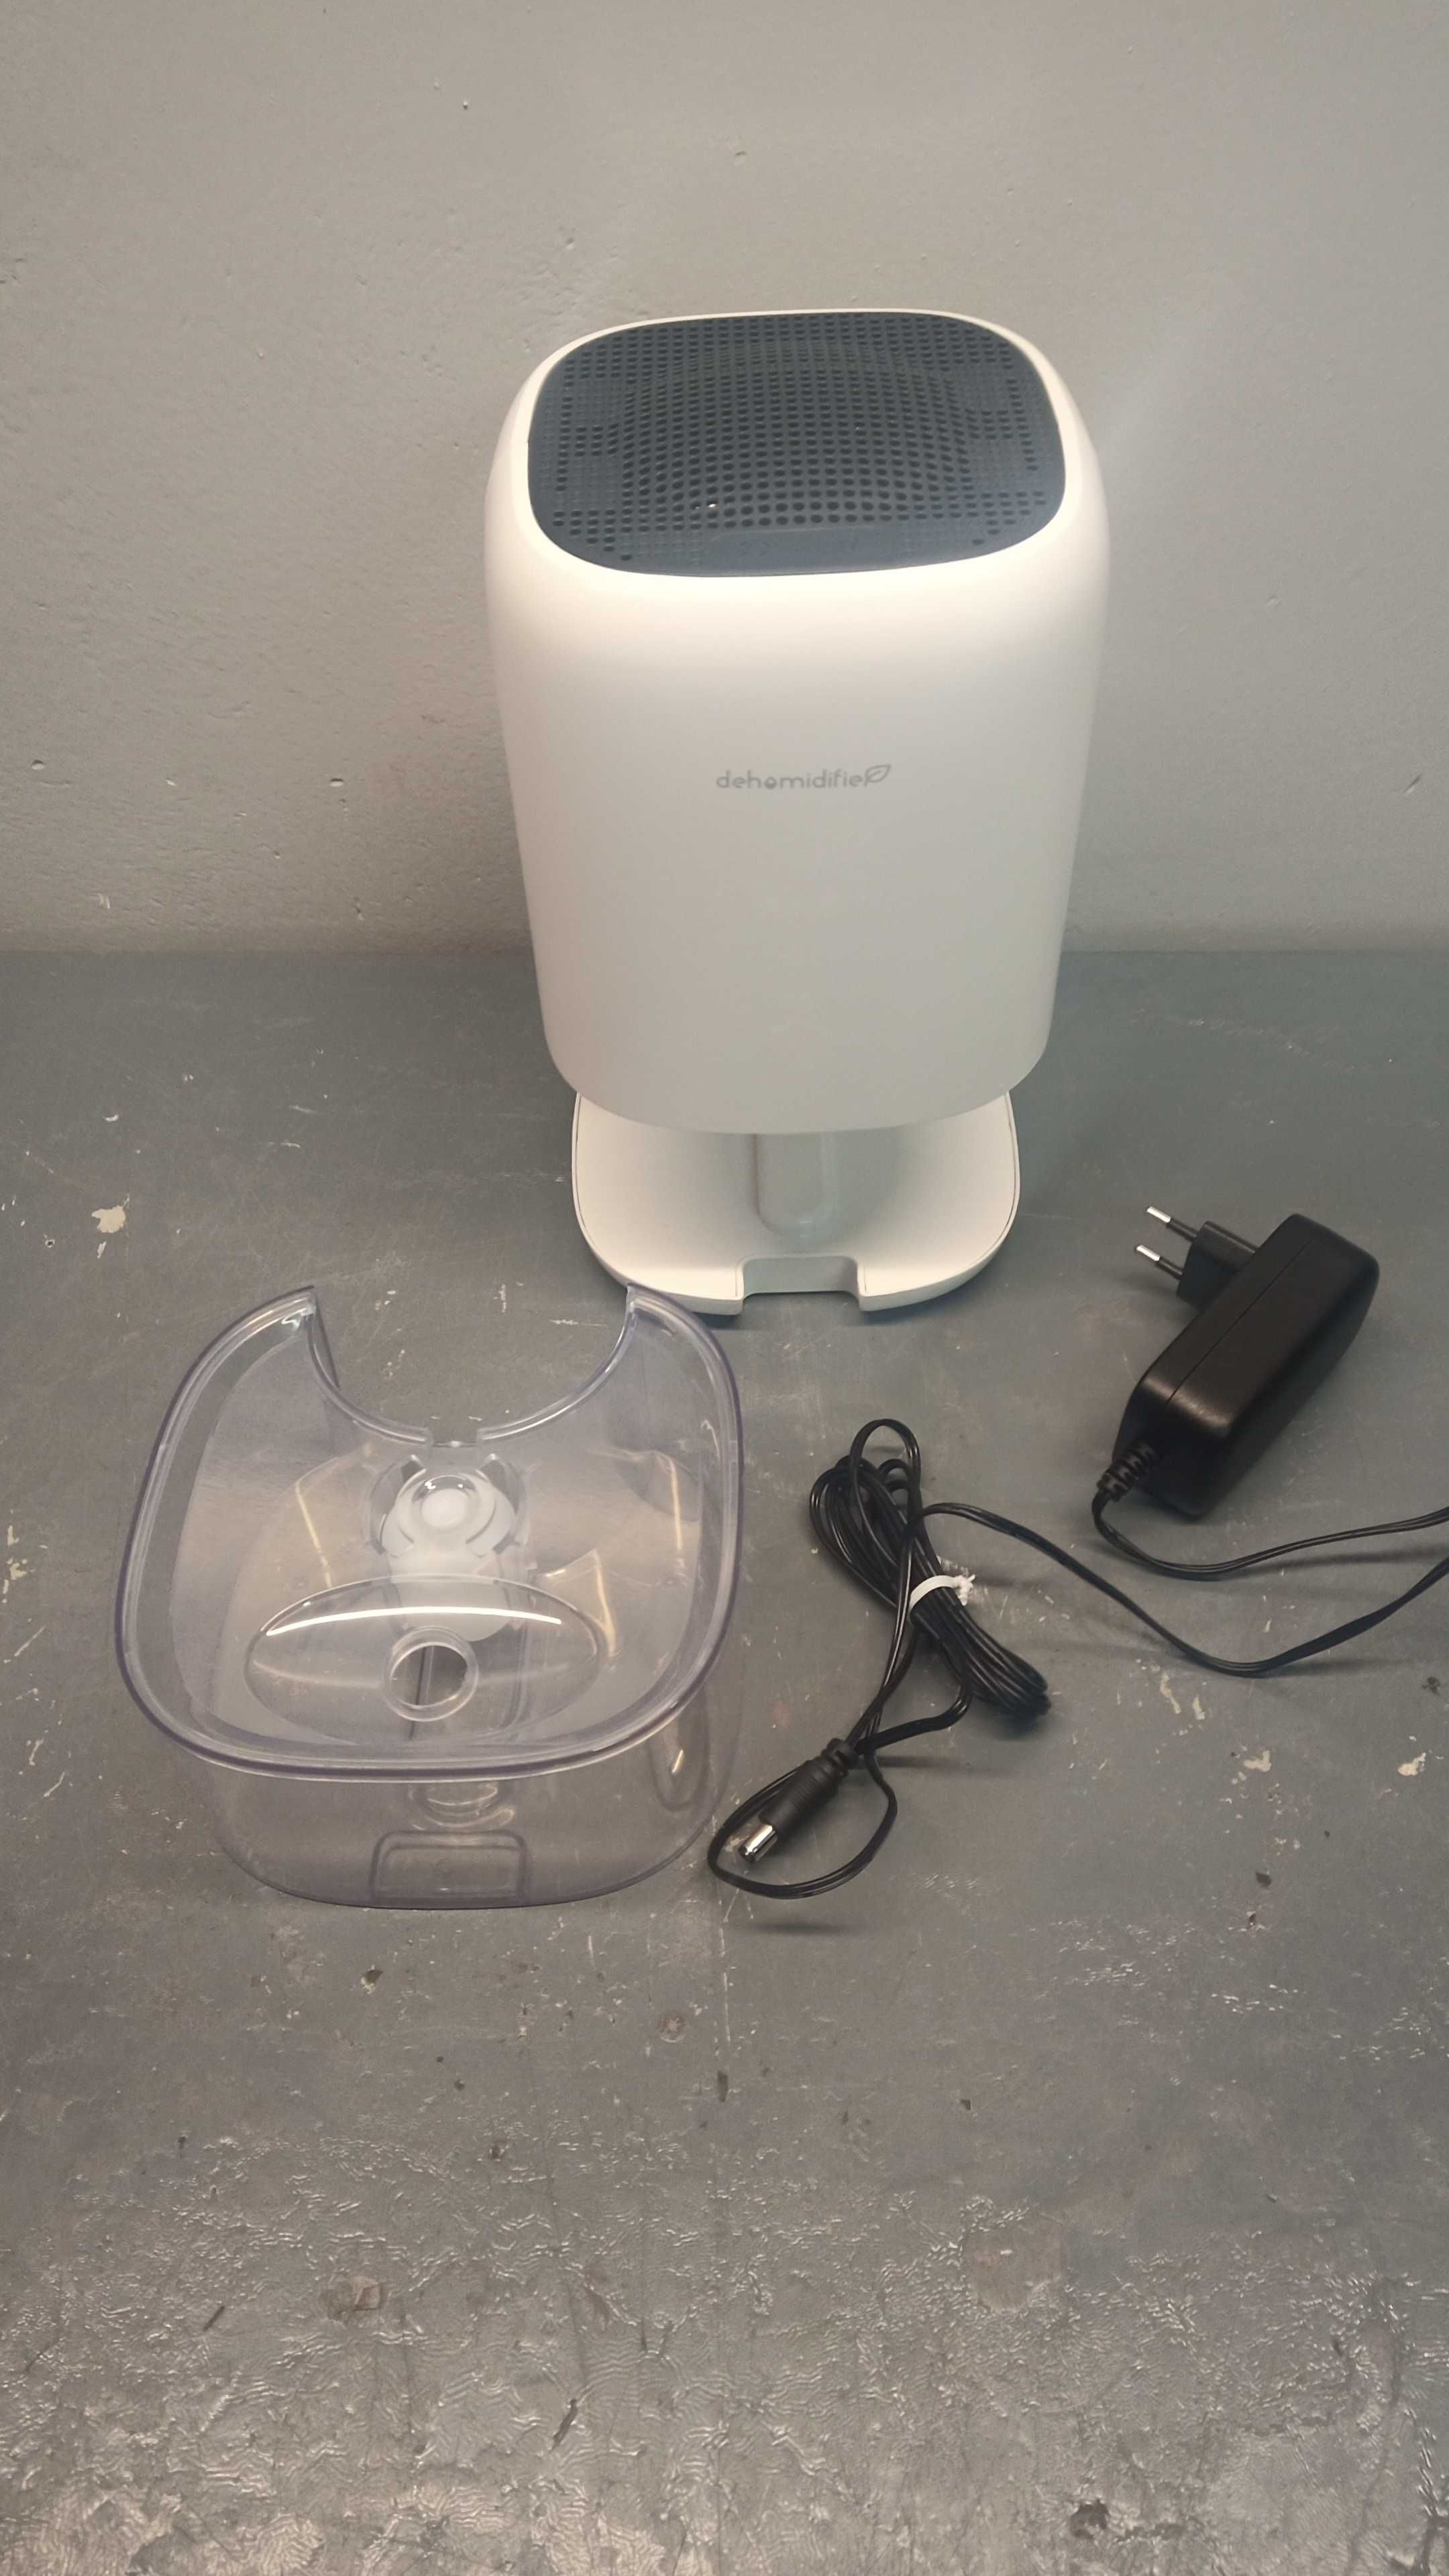 Osuszacz powietrza Dehumidifier DH-CS01